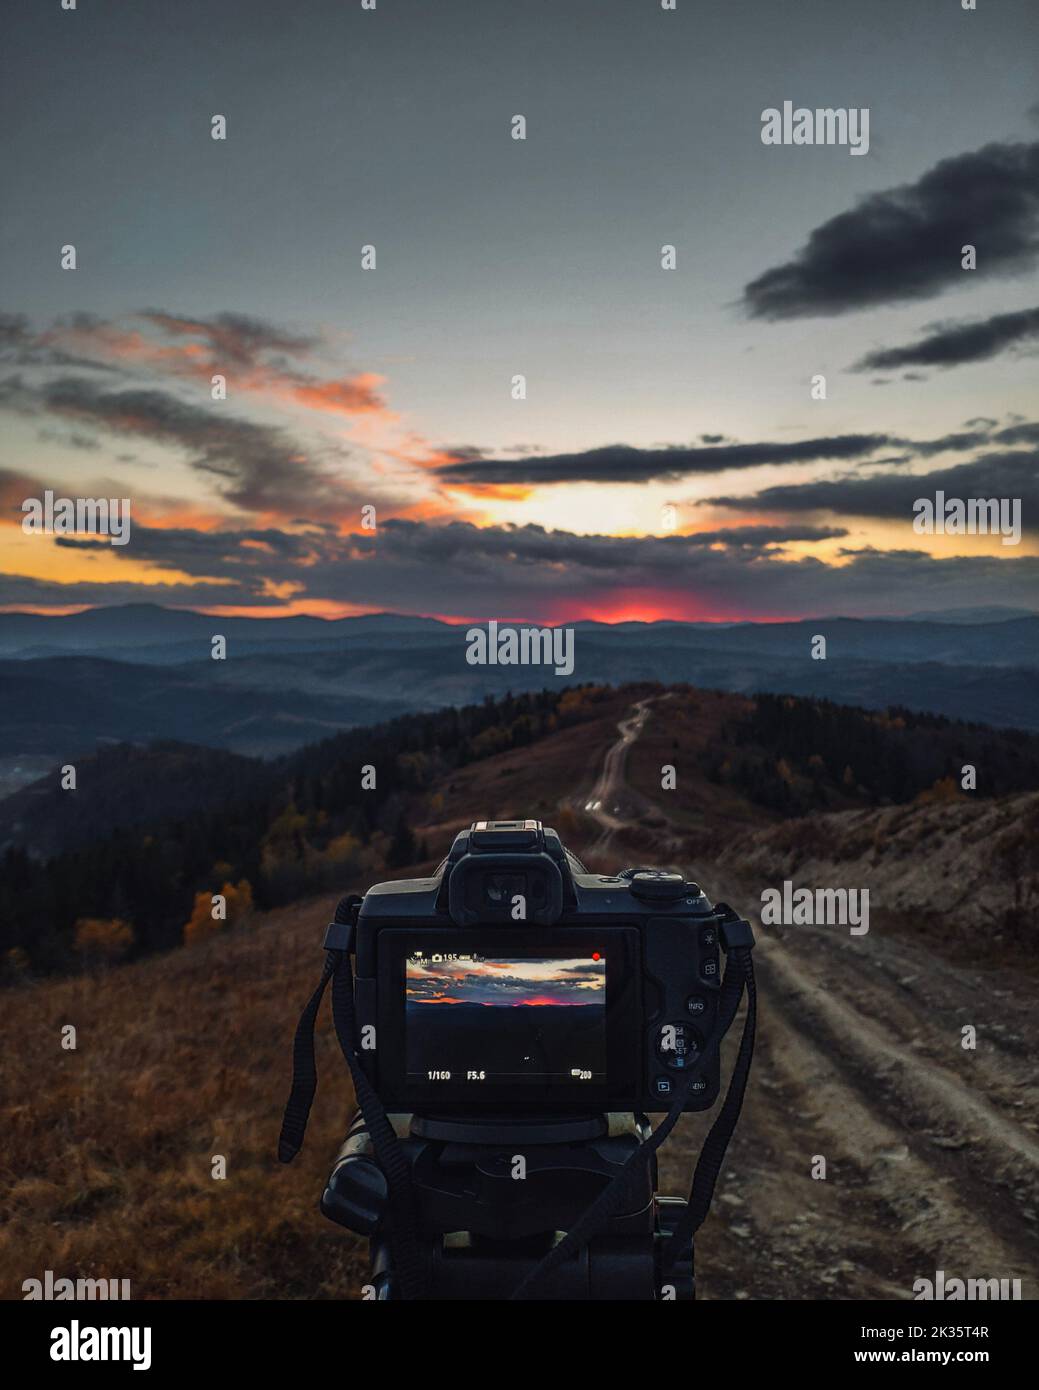 Kamera auf Stativ für Aufnahmen des Sonnenuntergangs in den Bergen Stockfoto